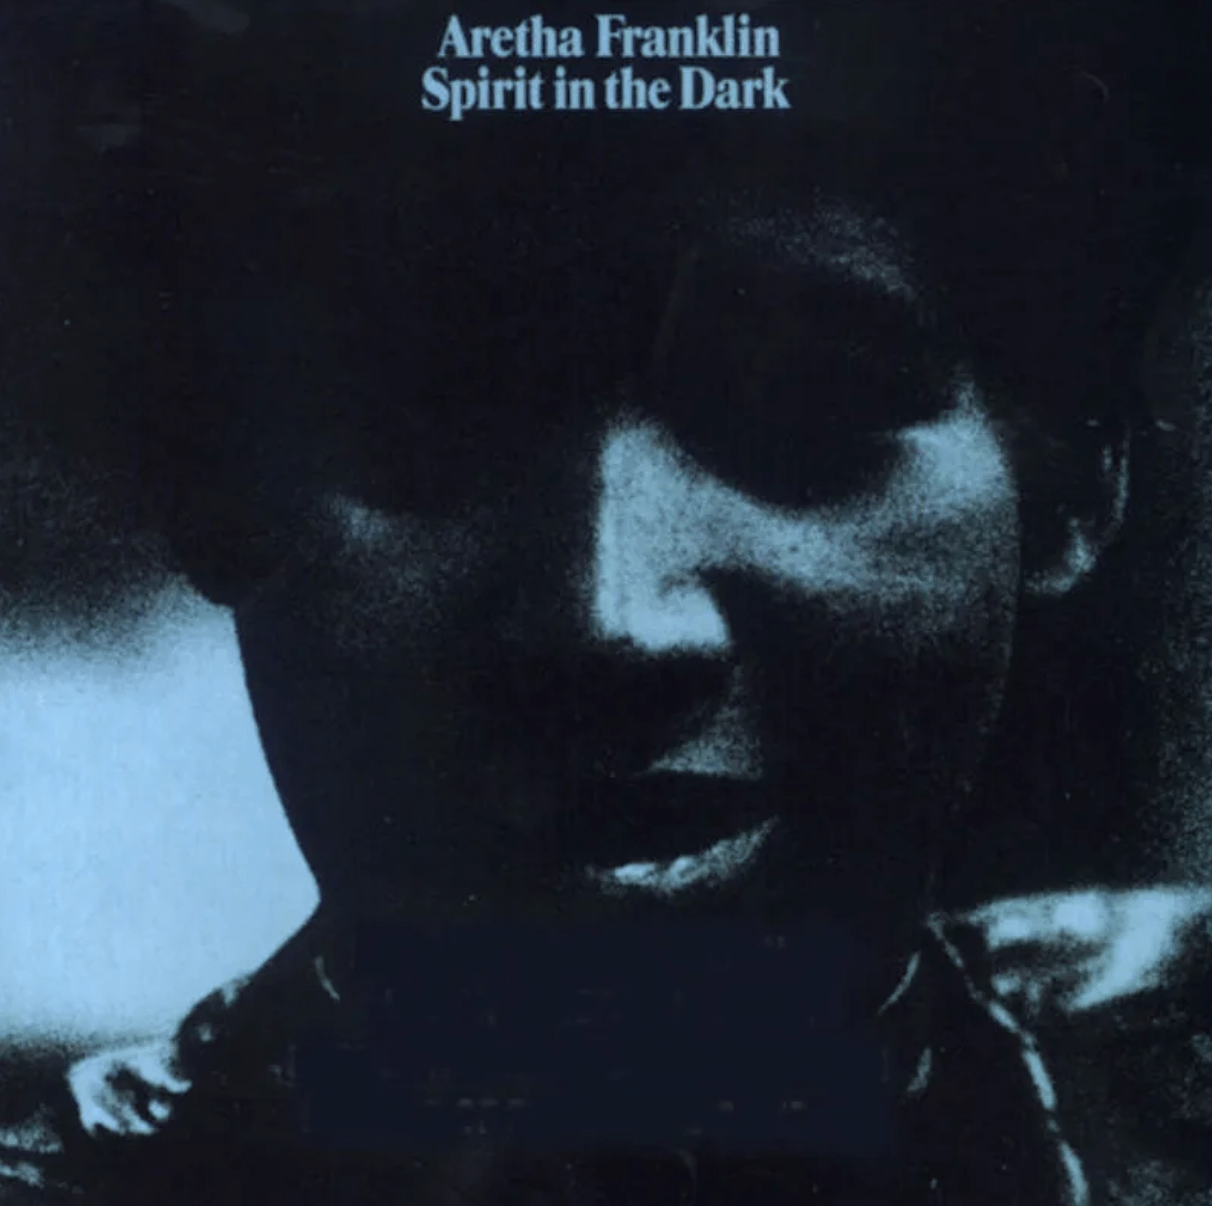 Aretha Franklin's Spirit in the Dark album